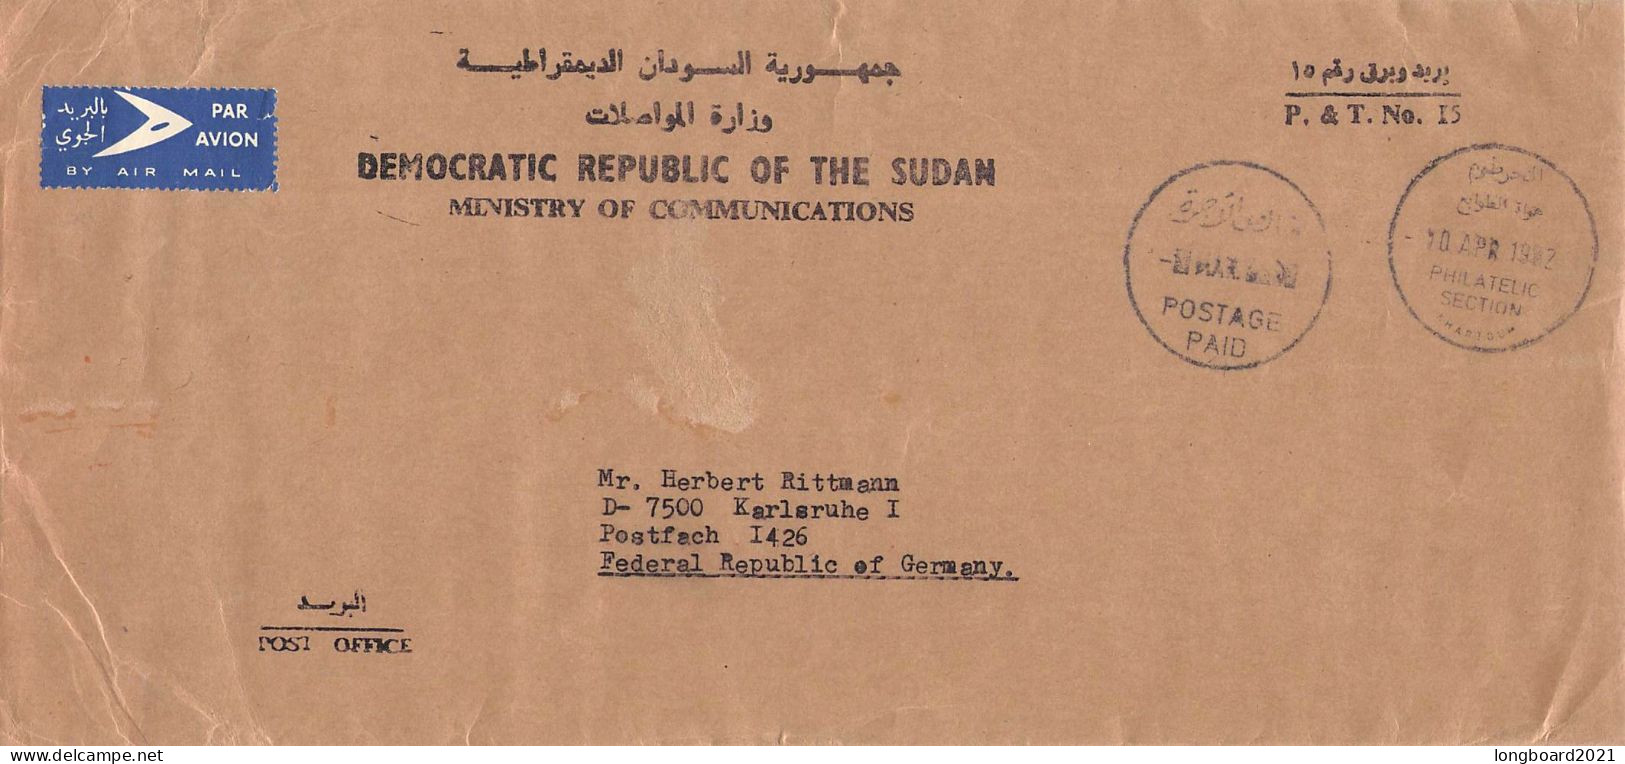 SUDAN - AIRMAIL POSTAGE PAID 1982 - KARLSRUHE / DE. / 5216 - Soedan (1954-...)